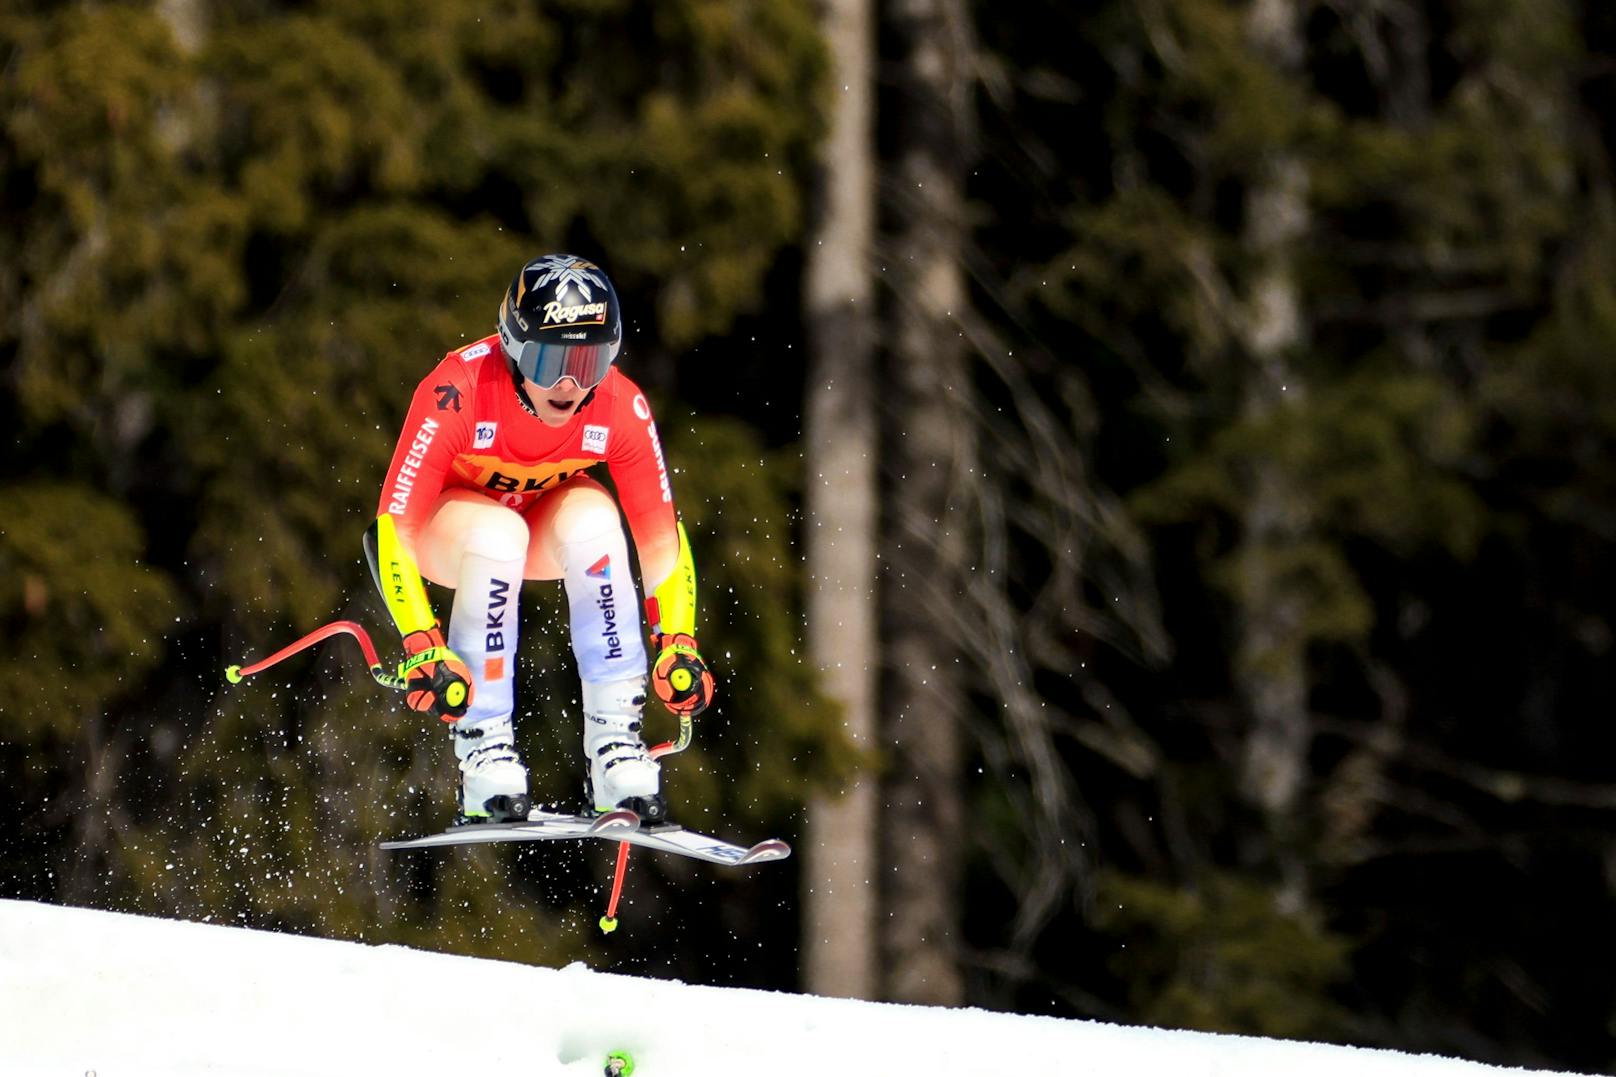 Die Schweizerin Lara Gut-Behrami war auch bei der ersten Abfahrt in Crans Montana nicht zu biegen. Die 32-Jährige schnappte sich auch mit ihrem siebenten Sieg in dieser Saison die Führung im Gesamtweltcup. ÖSV-Star Cornelia Hütter wurde ex aequo mit Jasmine Flury Zweite.